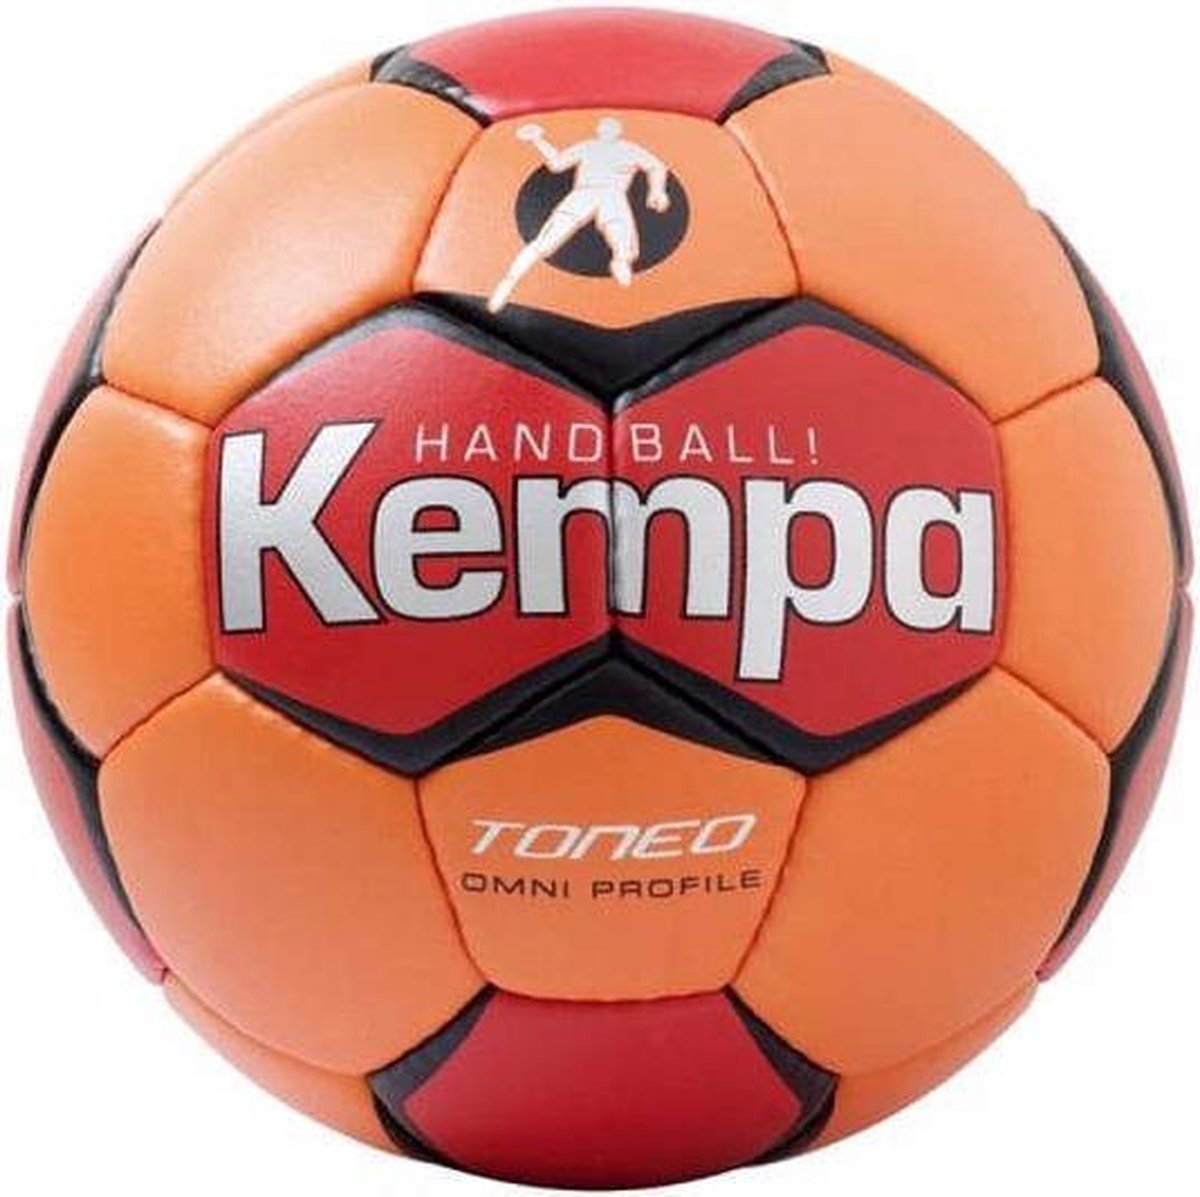 Kempa Handbal Toneo Omni Profile Oranje/Rood Maat 3